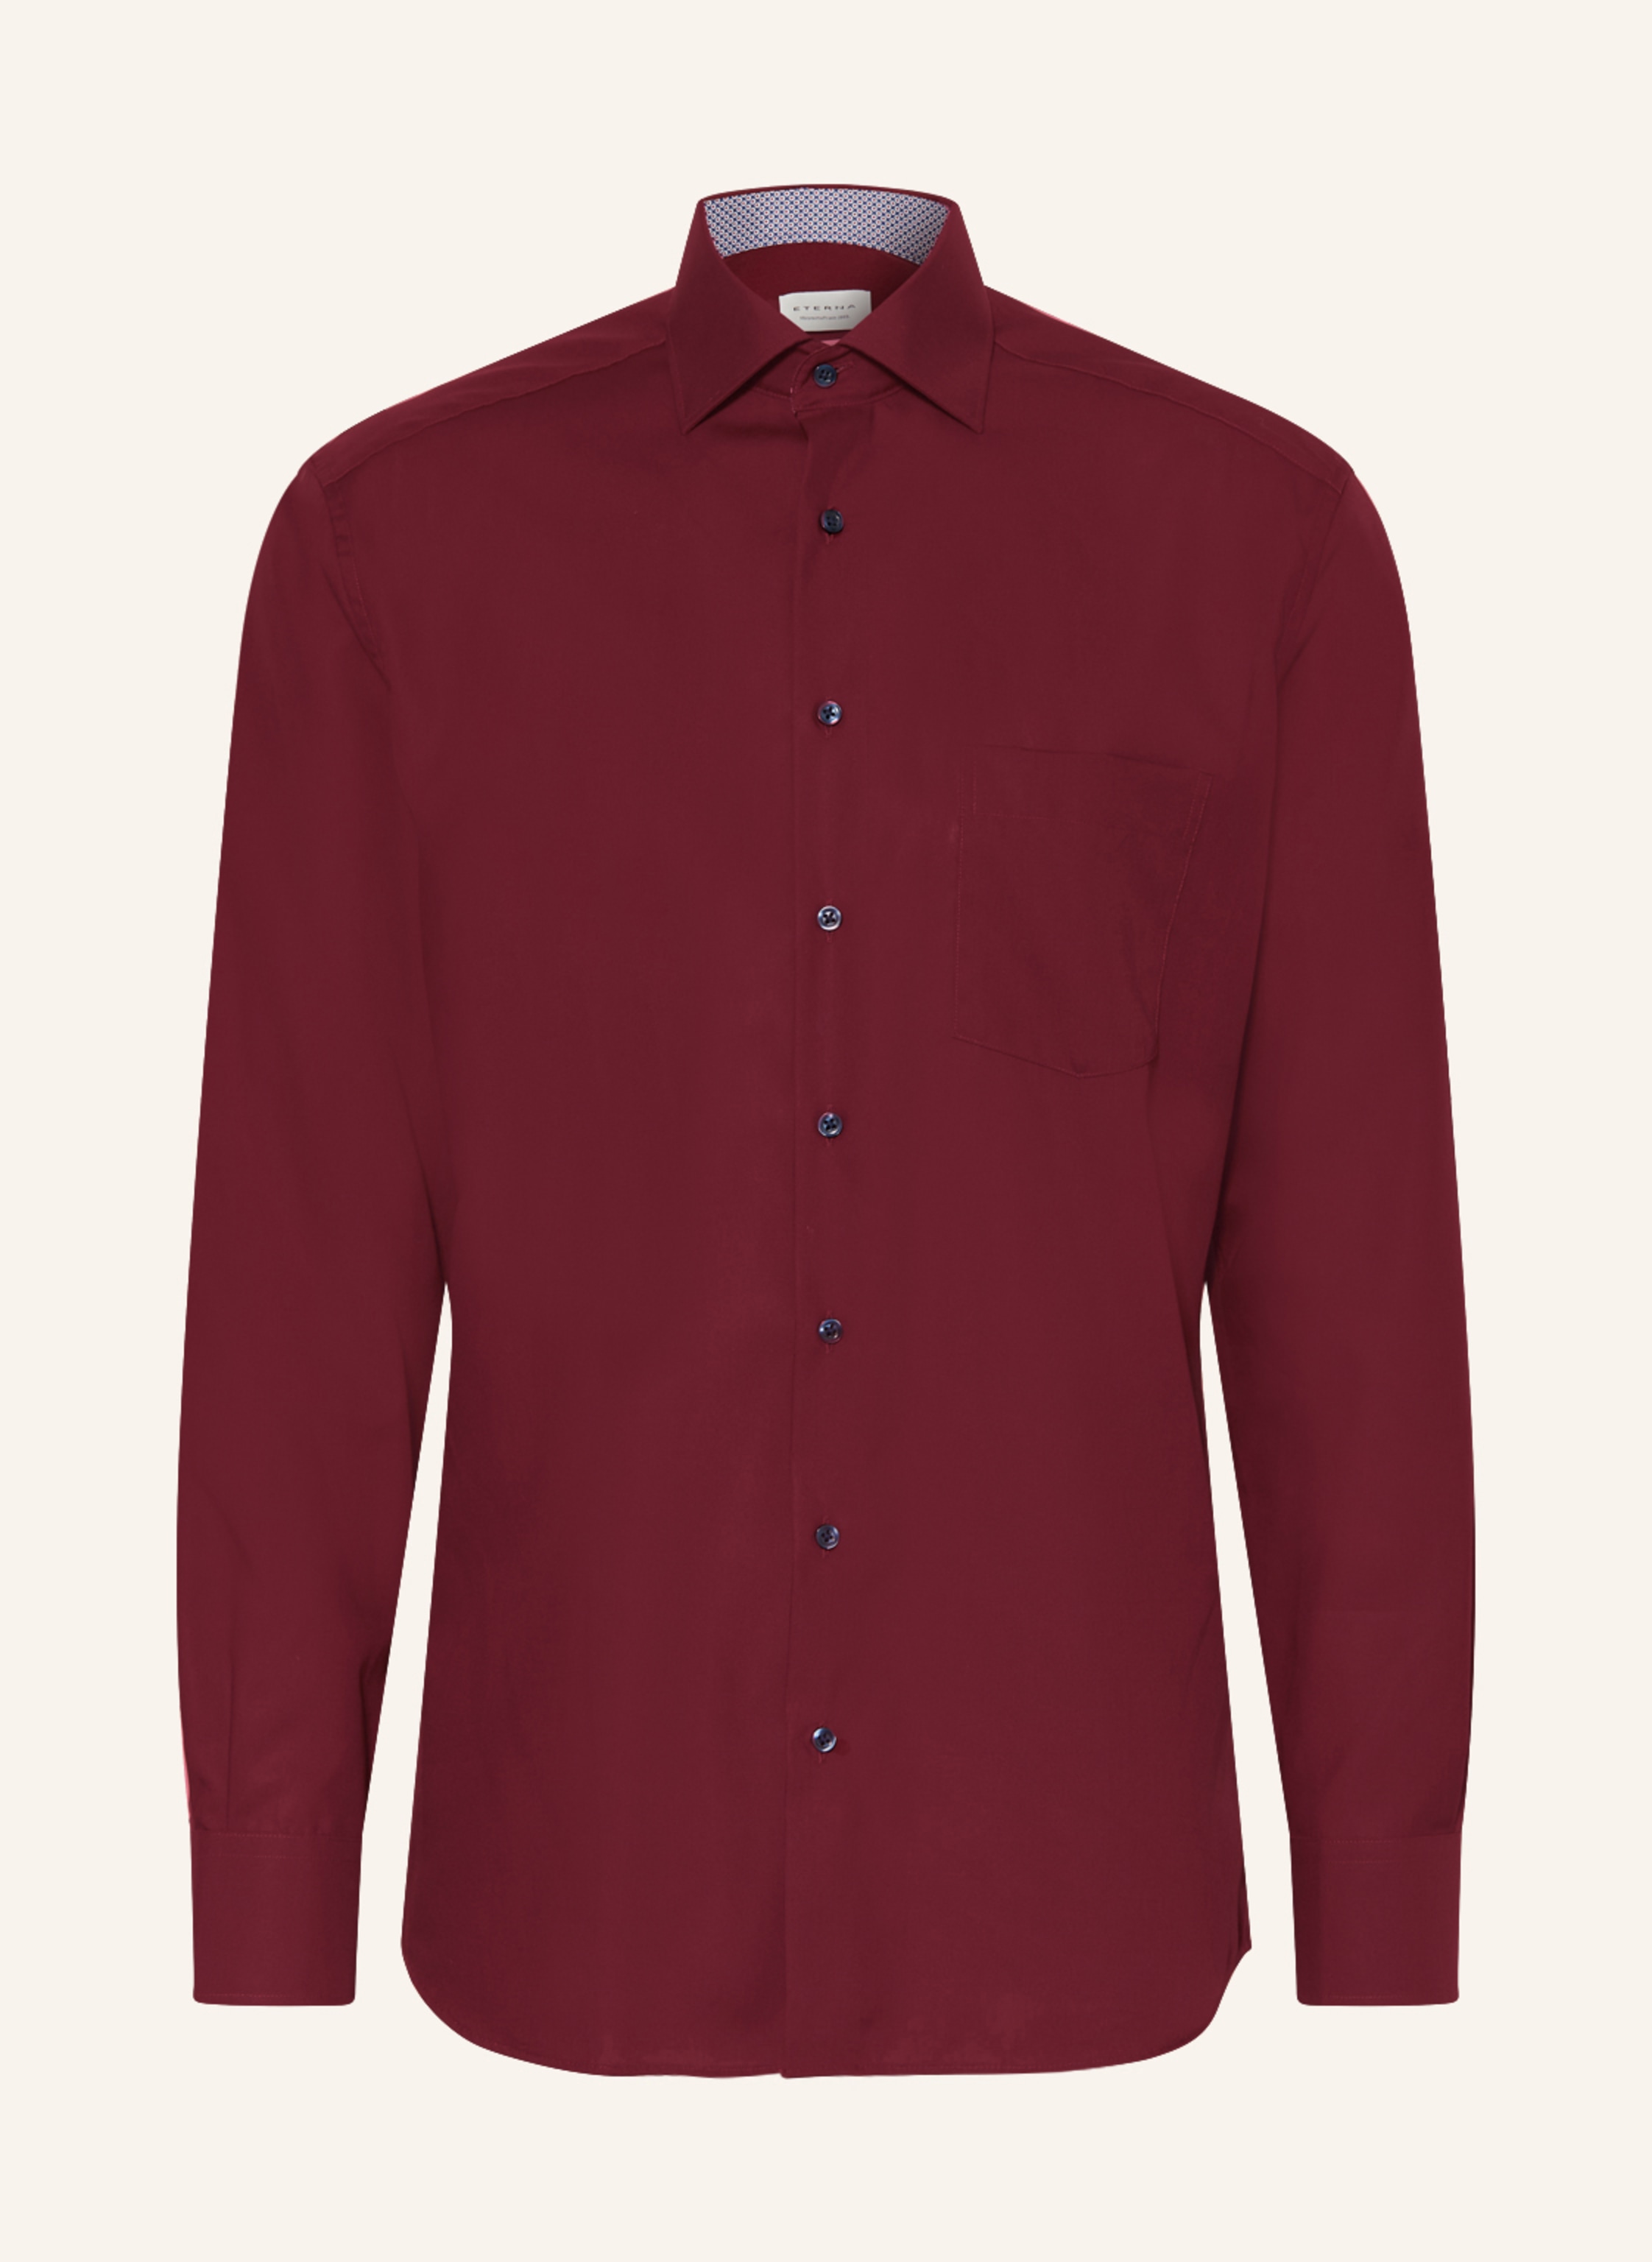 ETERNA Shirt dark red in modern fit